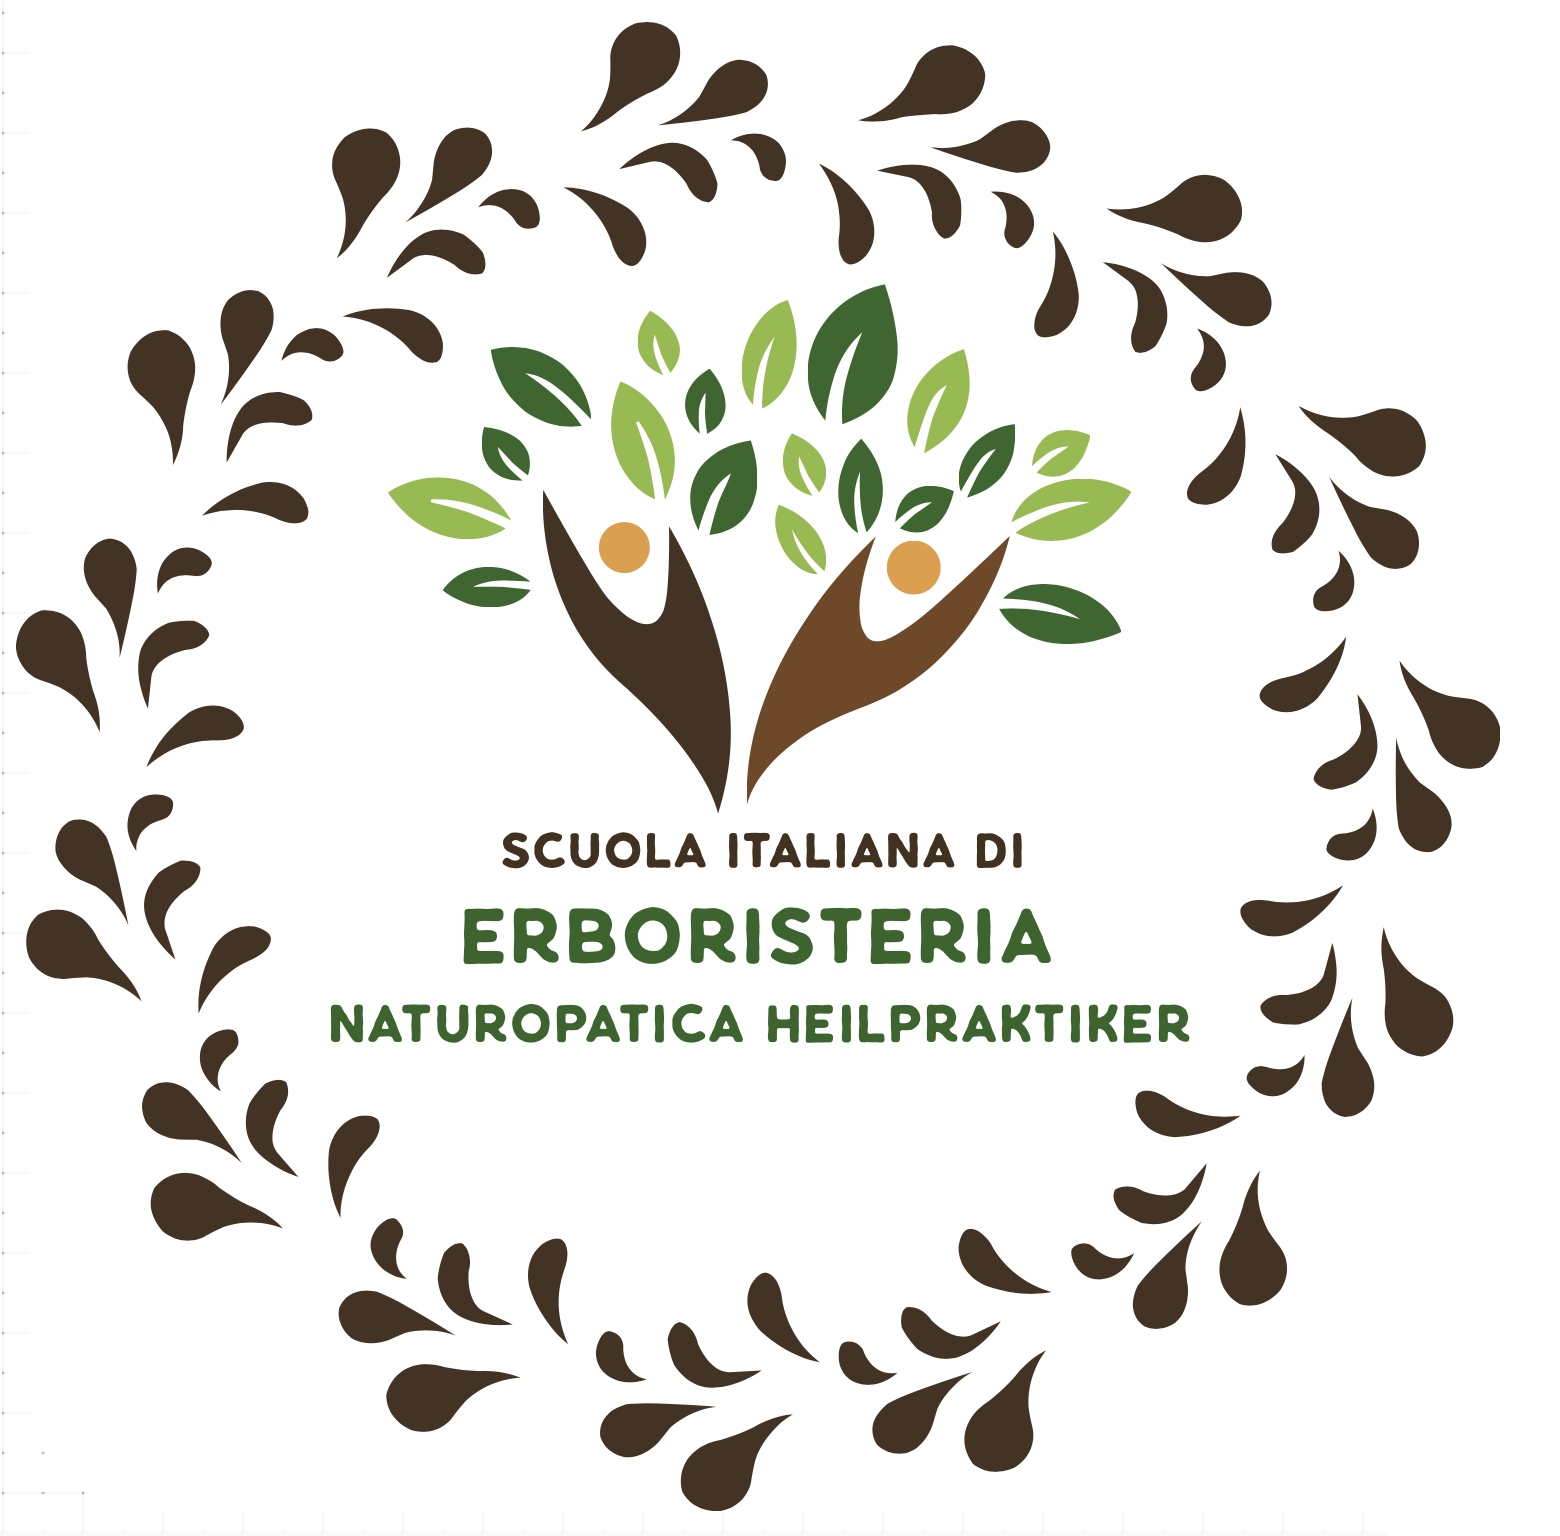 Scuola Italiana di Nutrizione Naturopatica Heilpraktiker